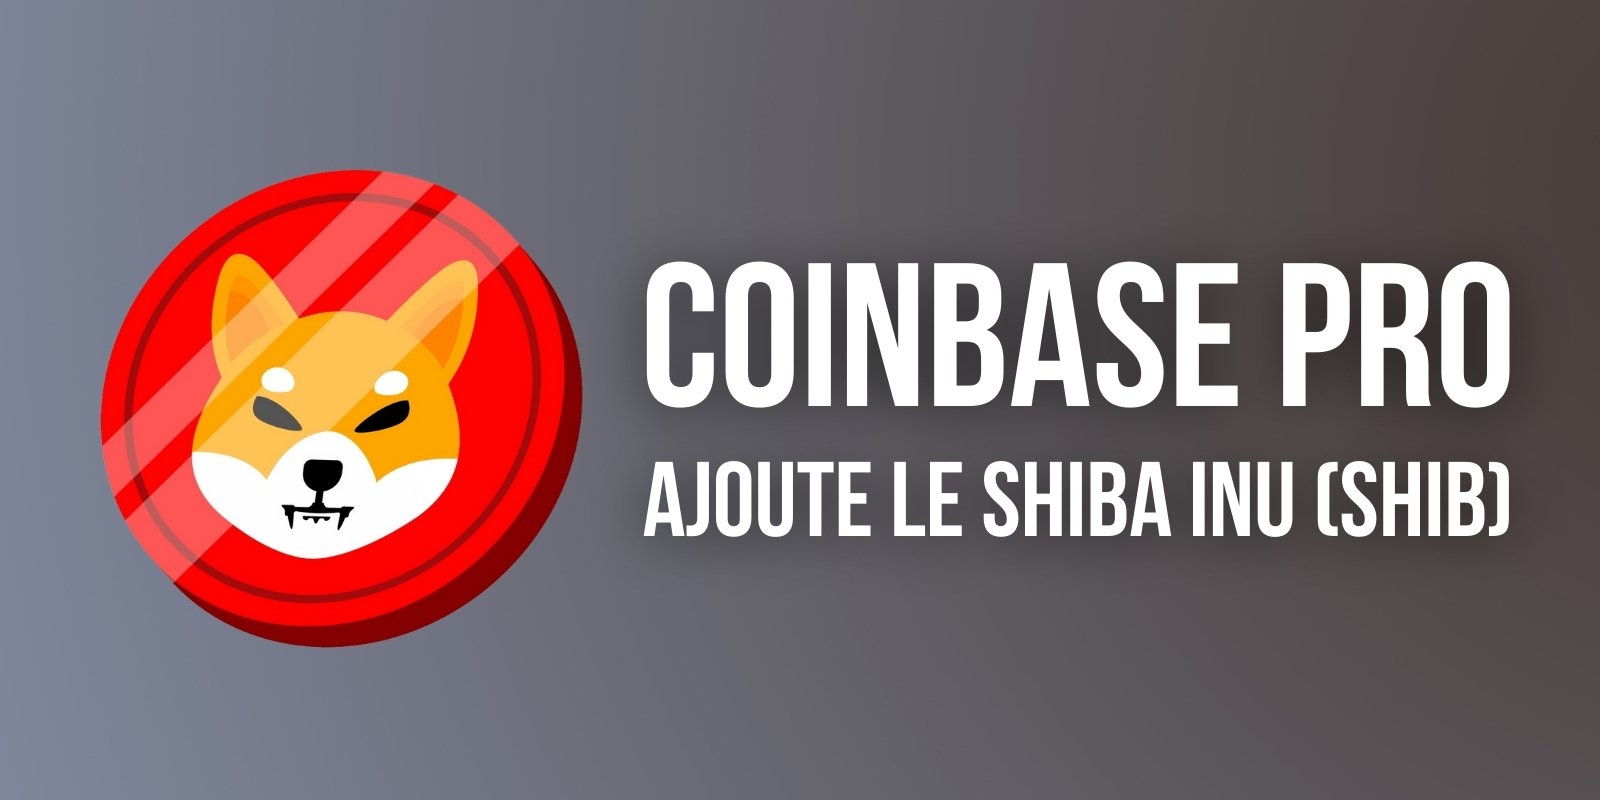 Après un premier échec, Coinbase Pro ajoute le memecoin Shiba Inu (SHIB)